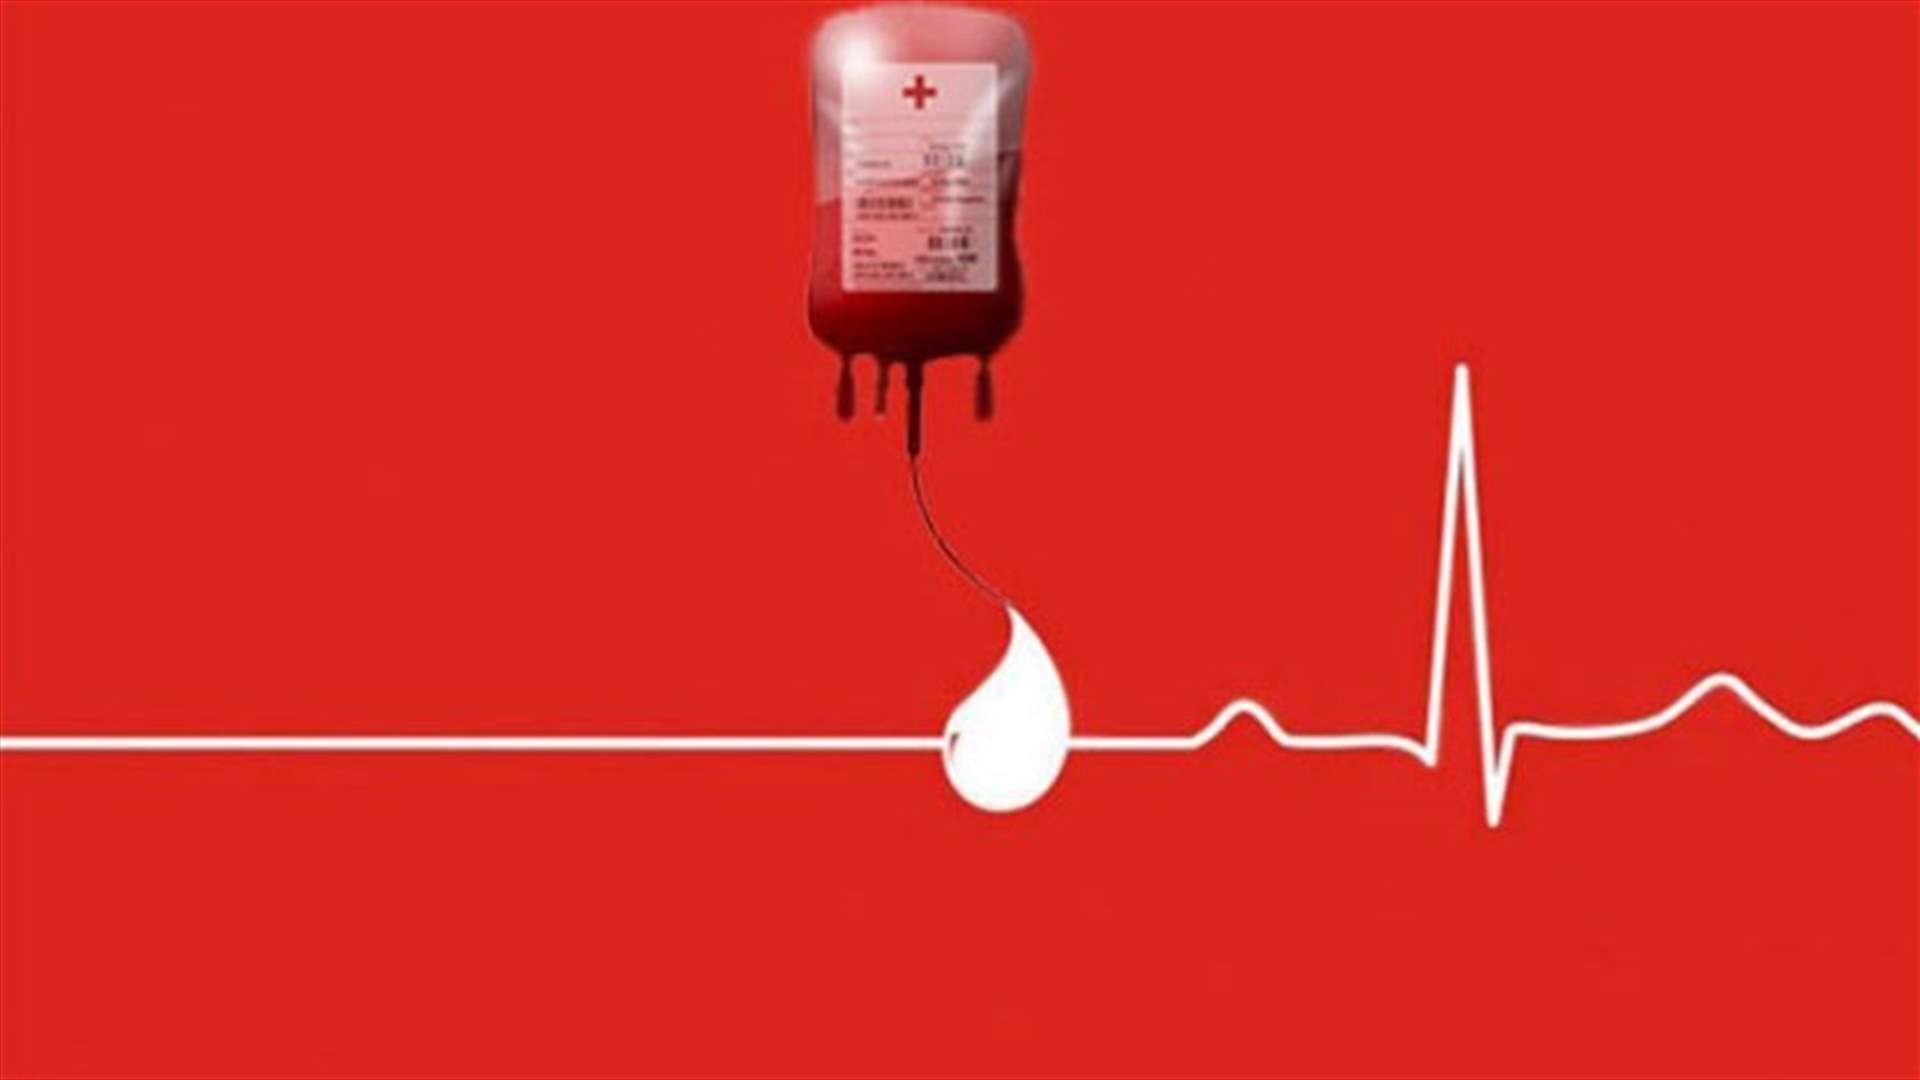 مريض في المستشفى اللبناني الكندي بحاجة ماسة الى بلاكيت دم من فئة AB+... للتواصل 03985722